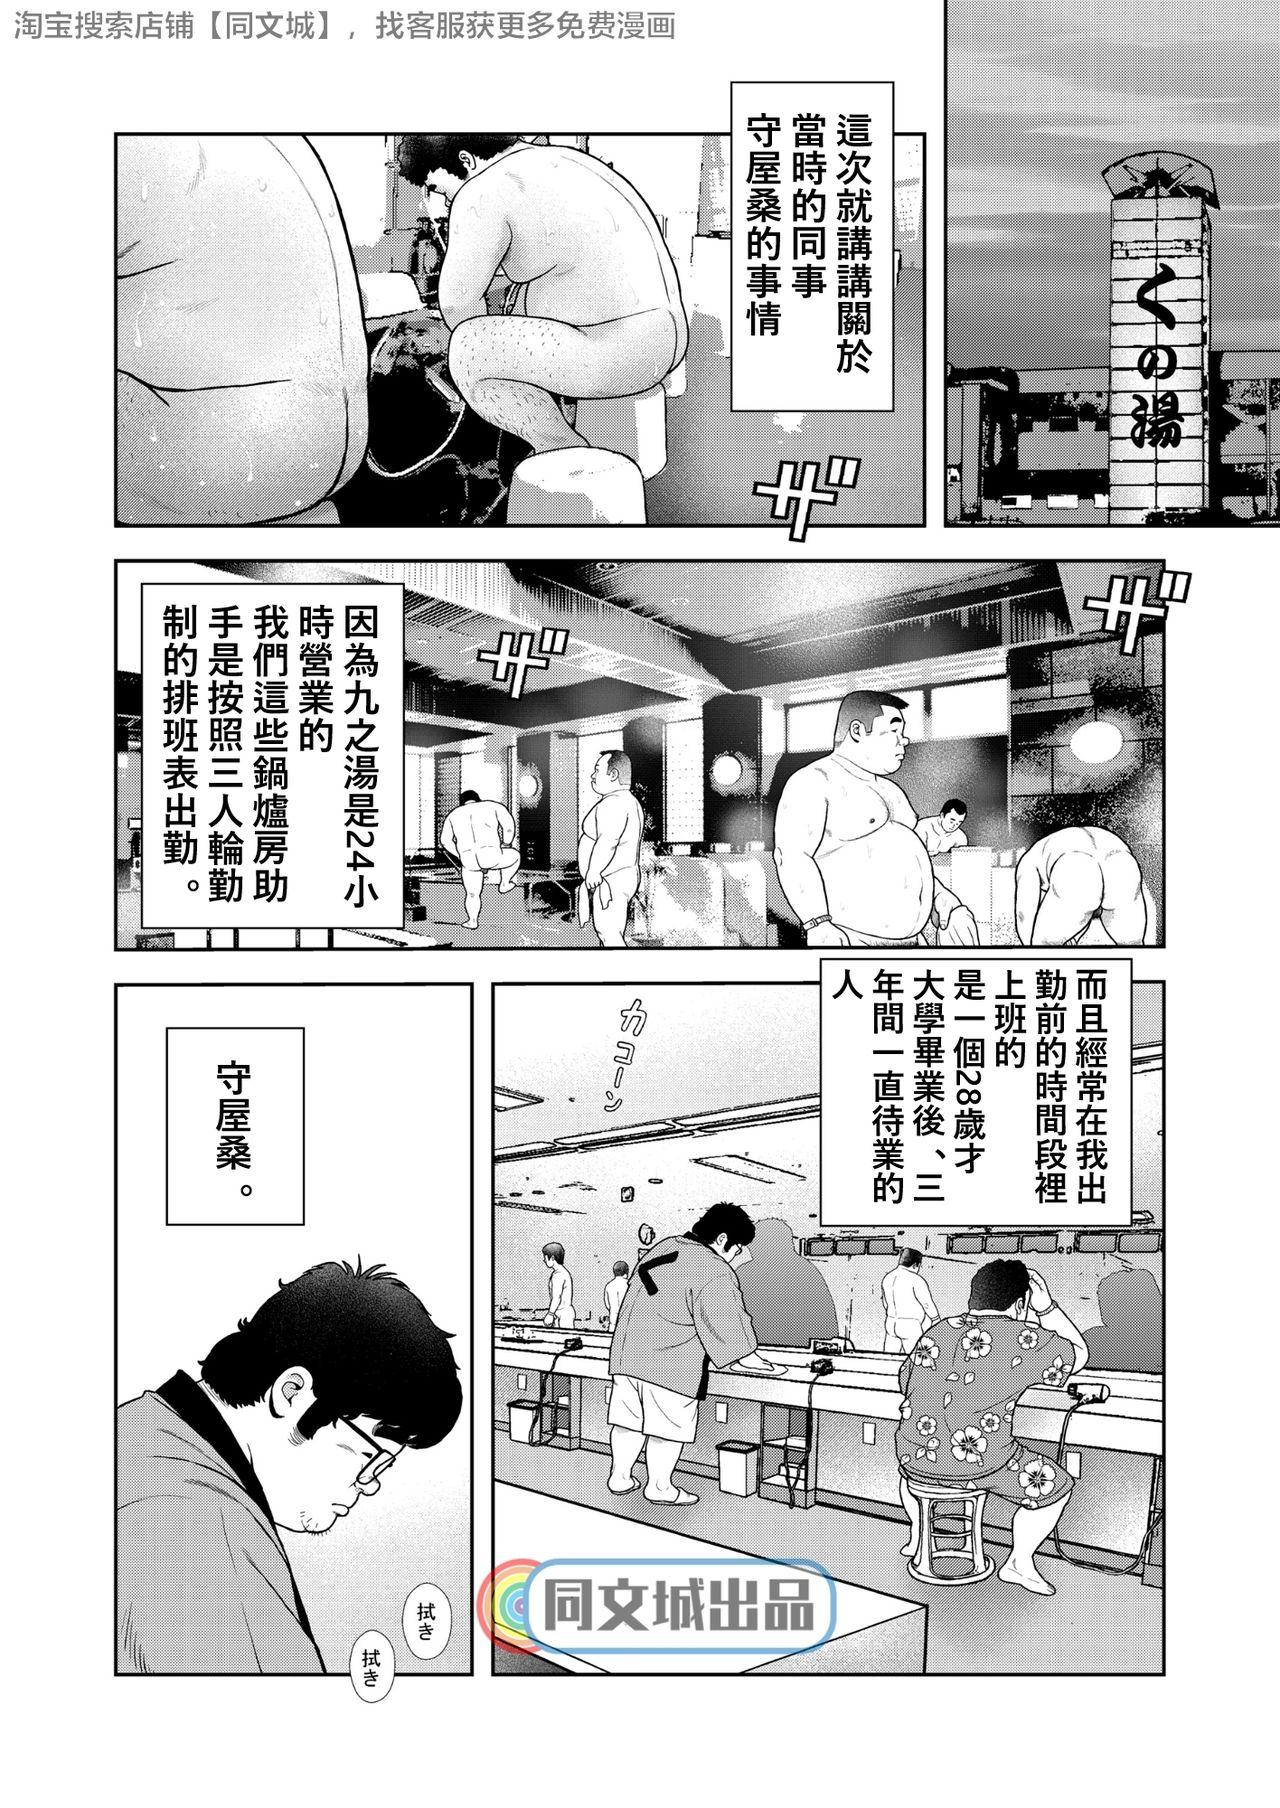 Screaming Kunoyu Gohatsume Shinju no Sao - Original Teentube - Page 2